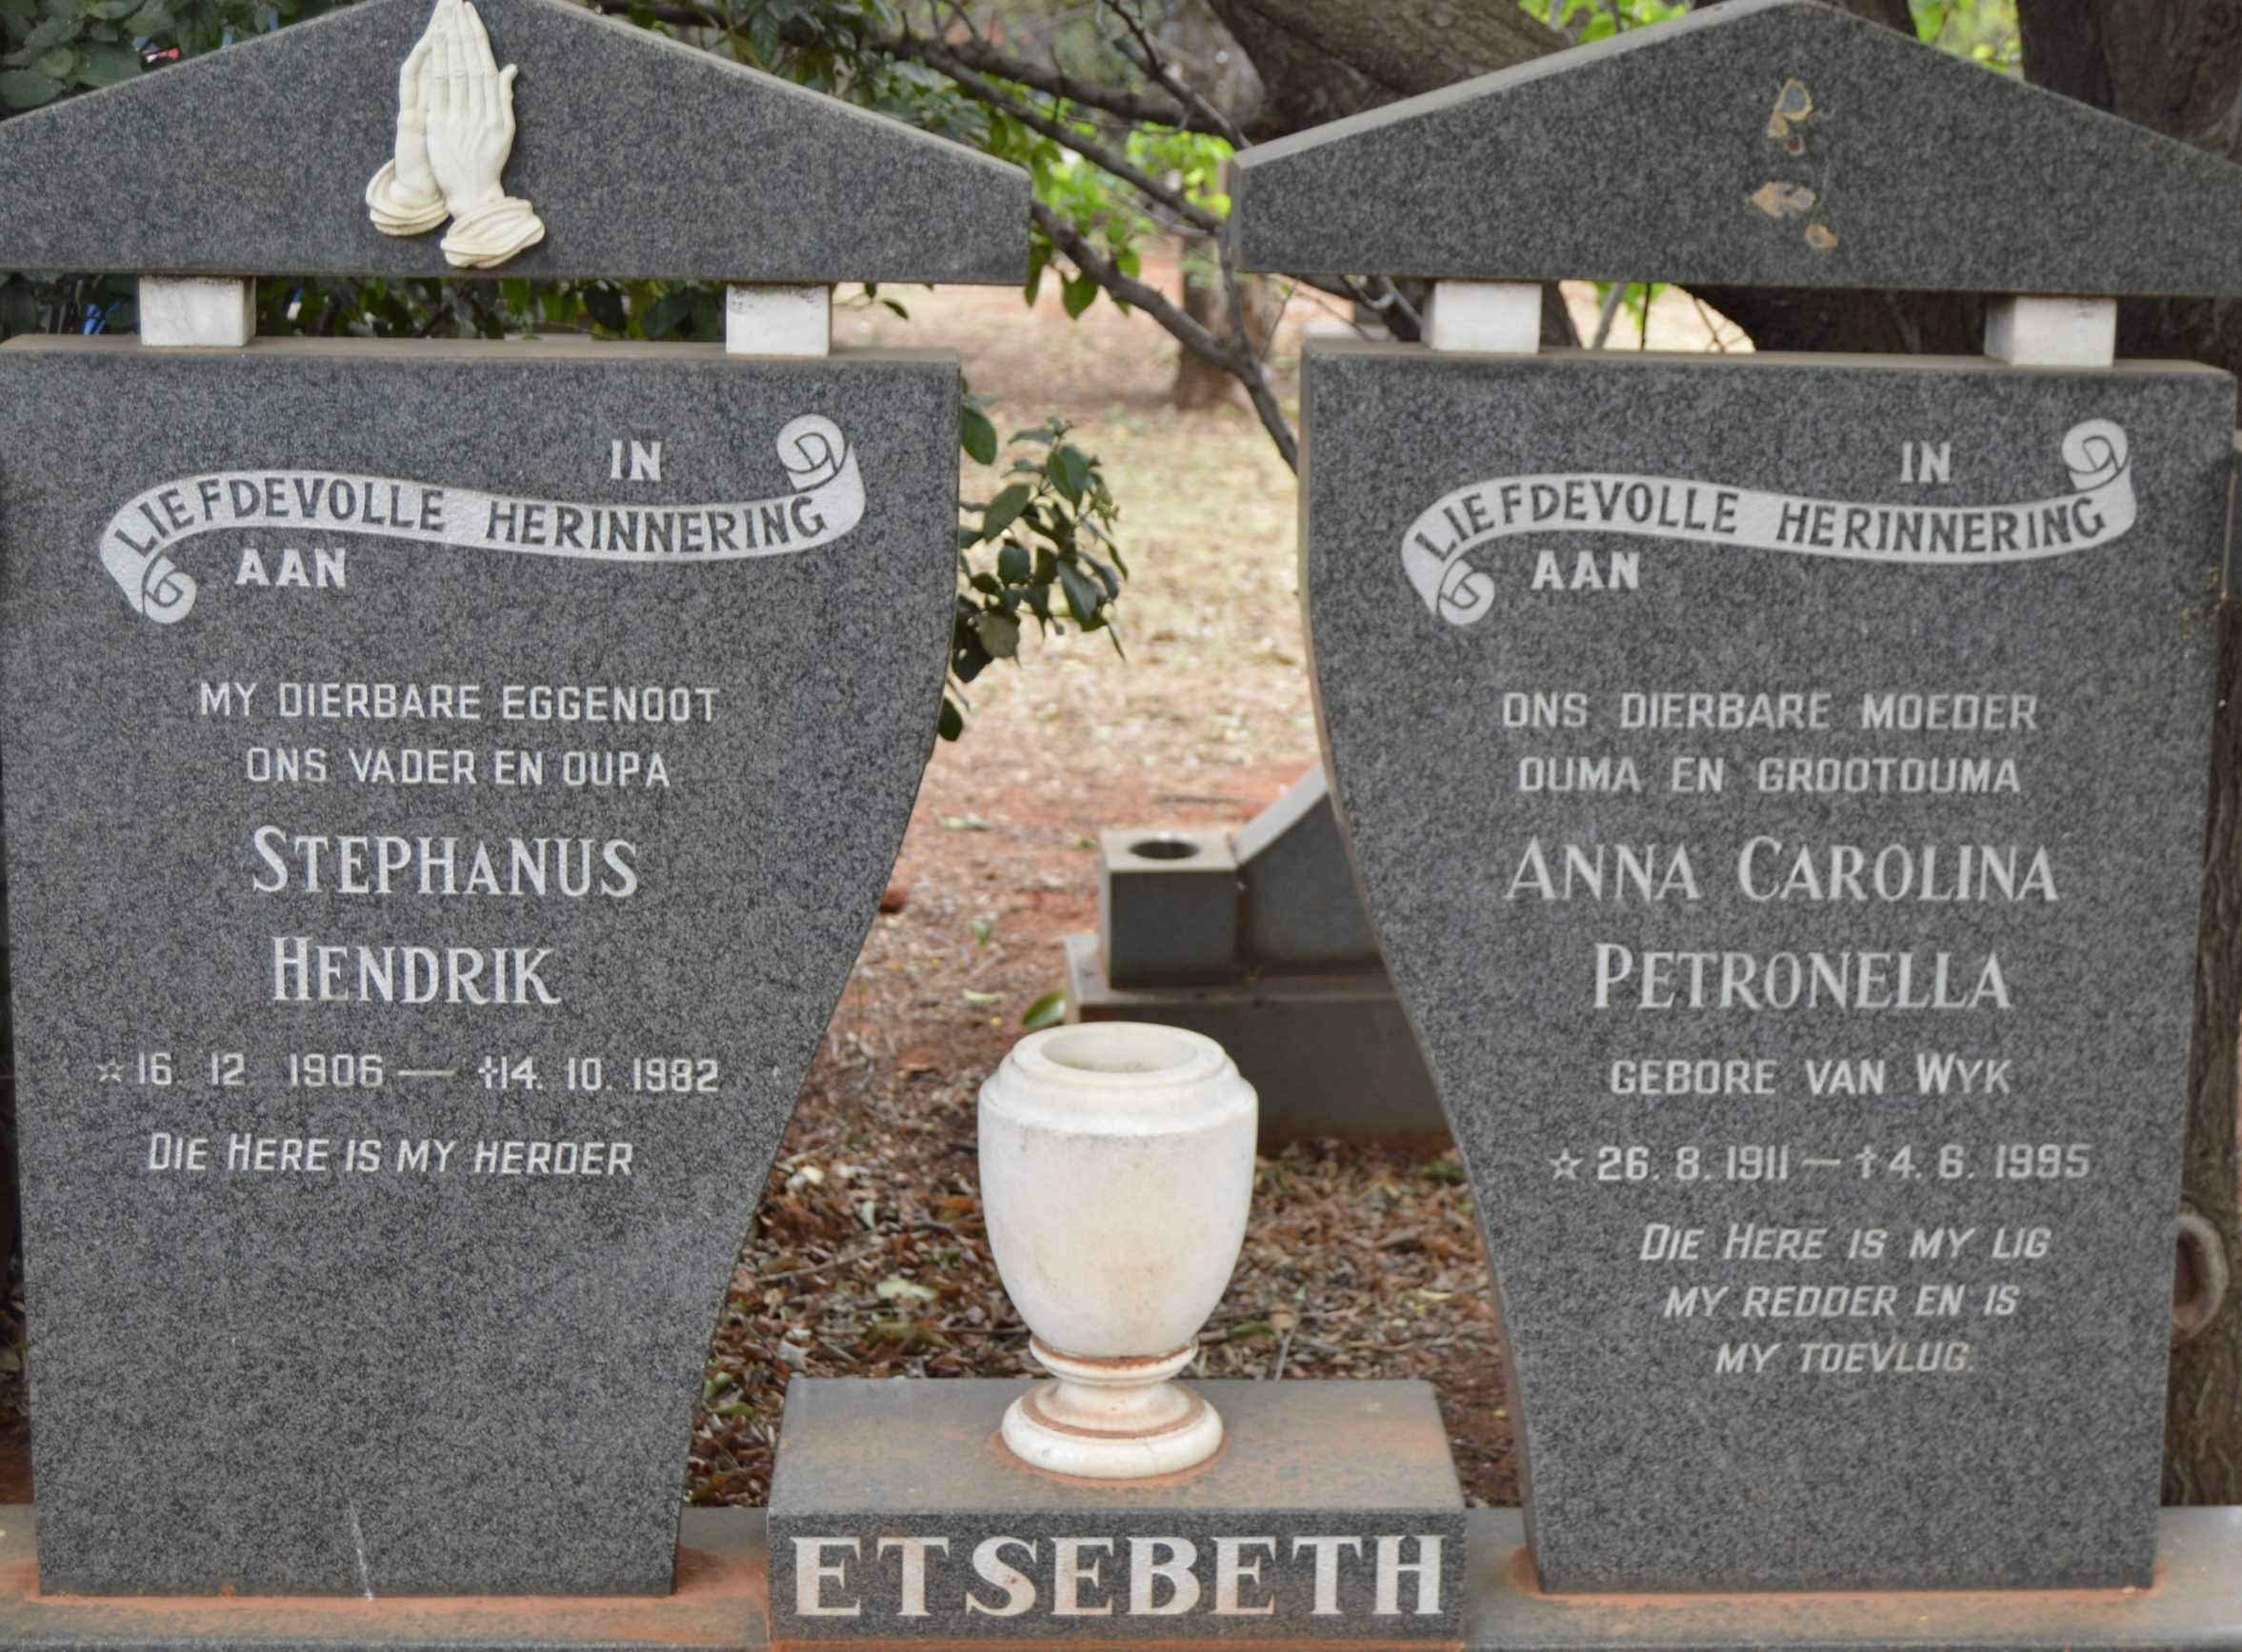 ETSEBETH Stephanus Hendrik 1906-1982 & Anna Carolina Petronella VAN WYK 1911-1995